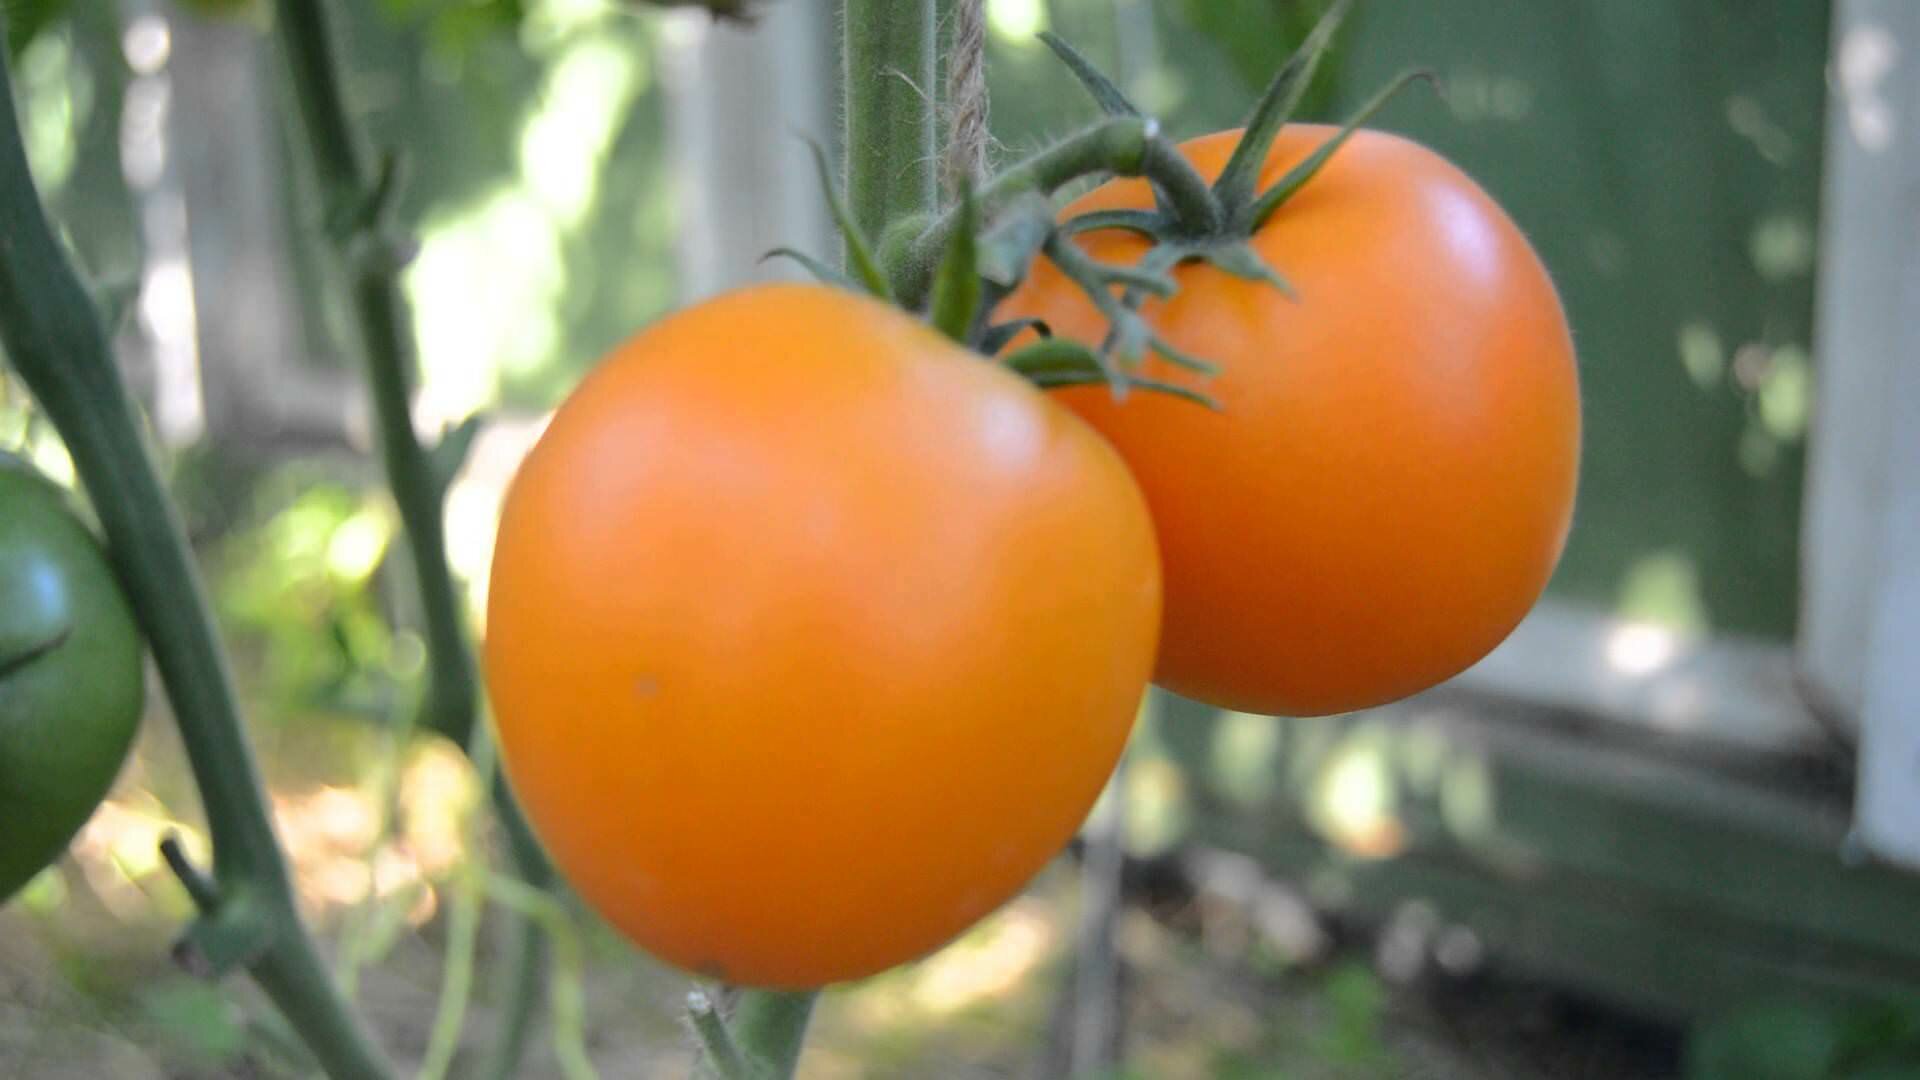 Сорт «Мандаринка» относится к скороспелым сортам томатов